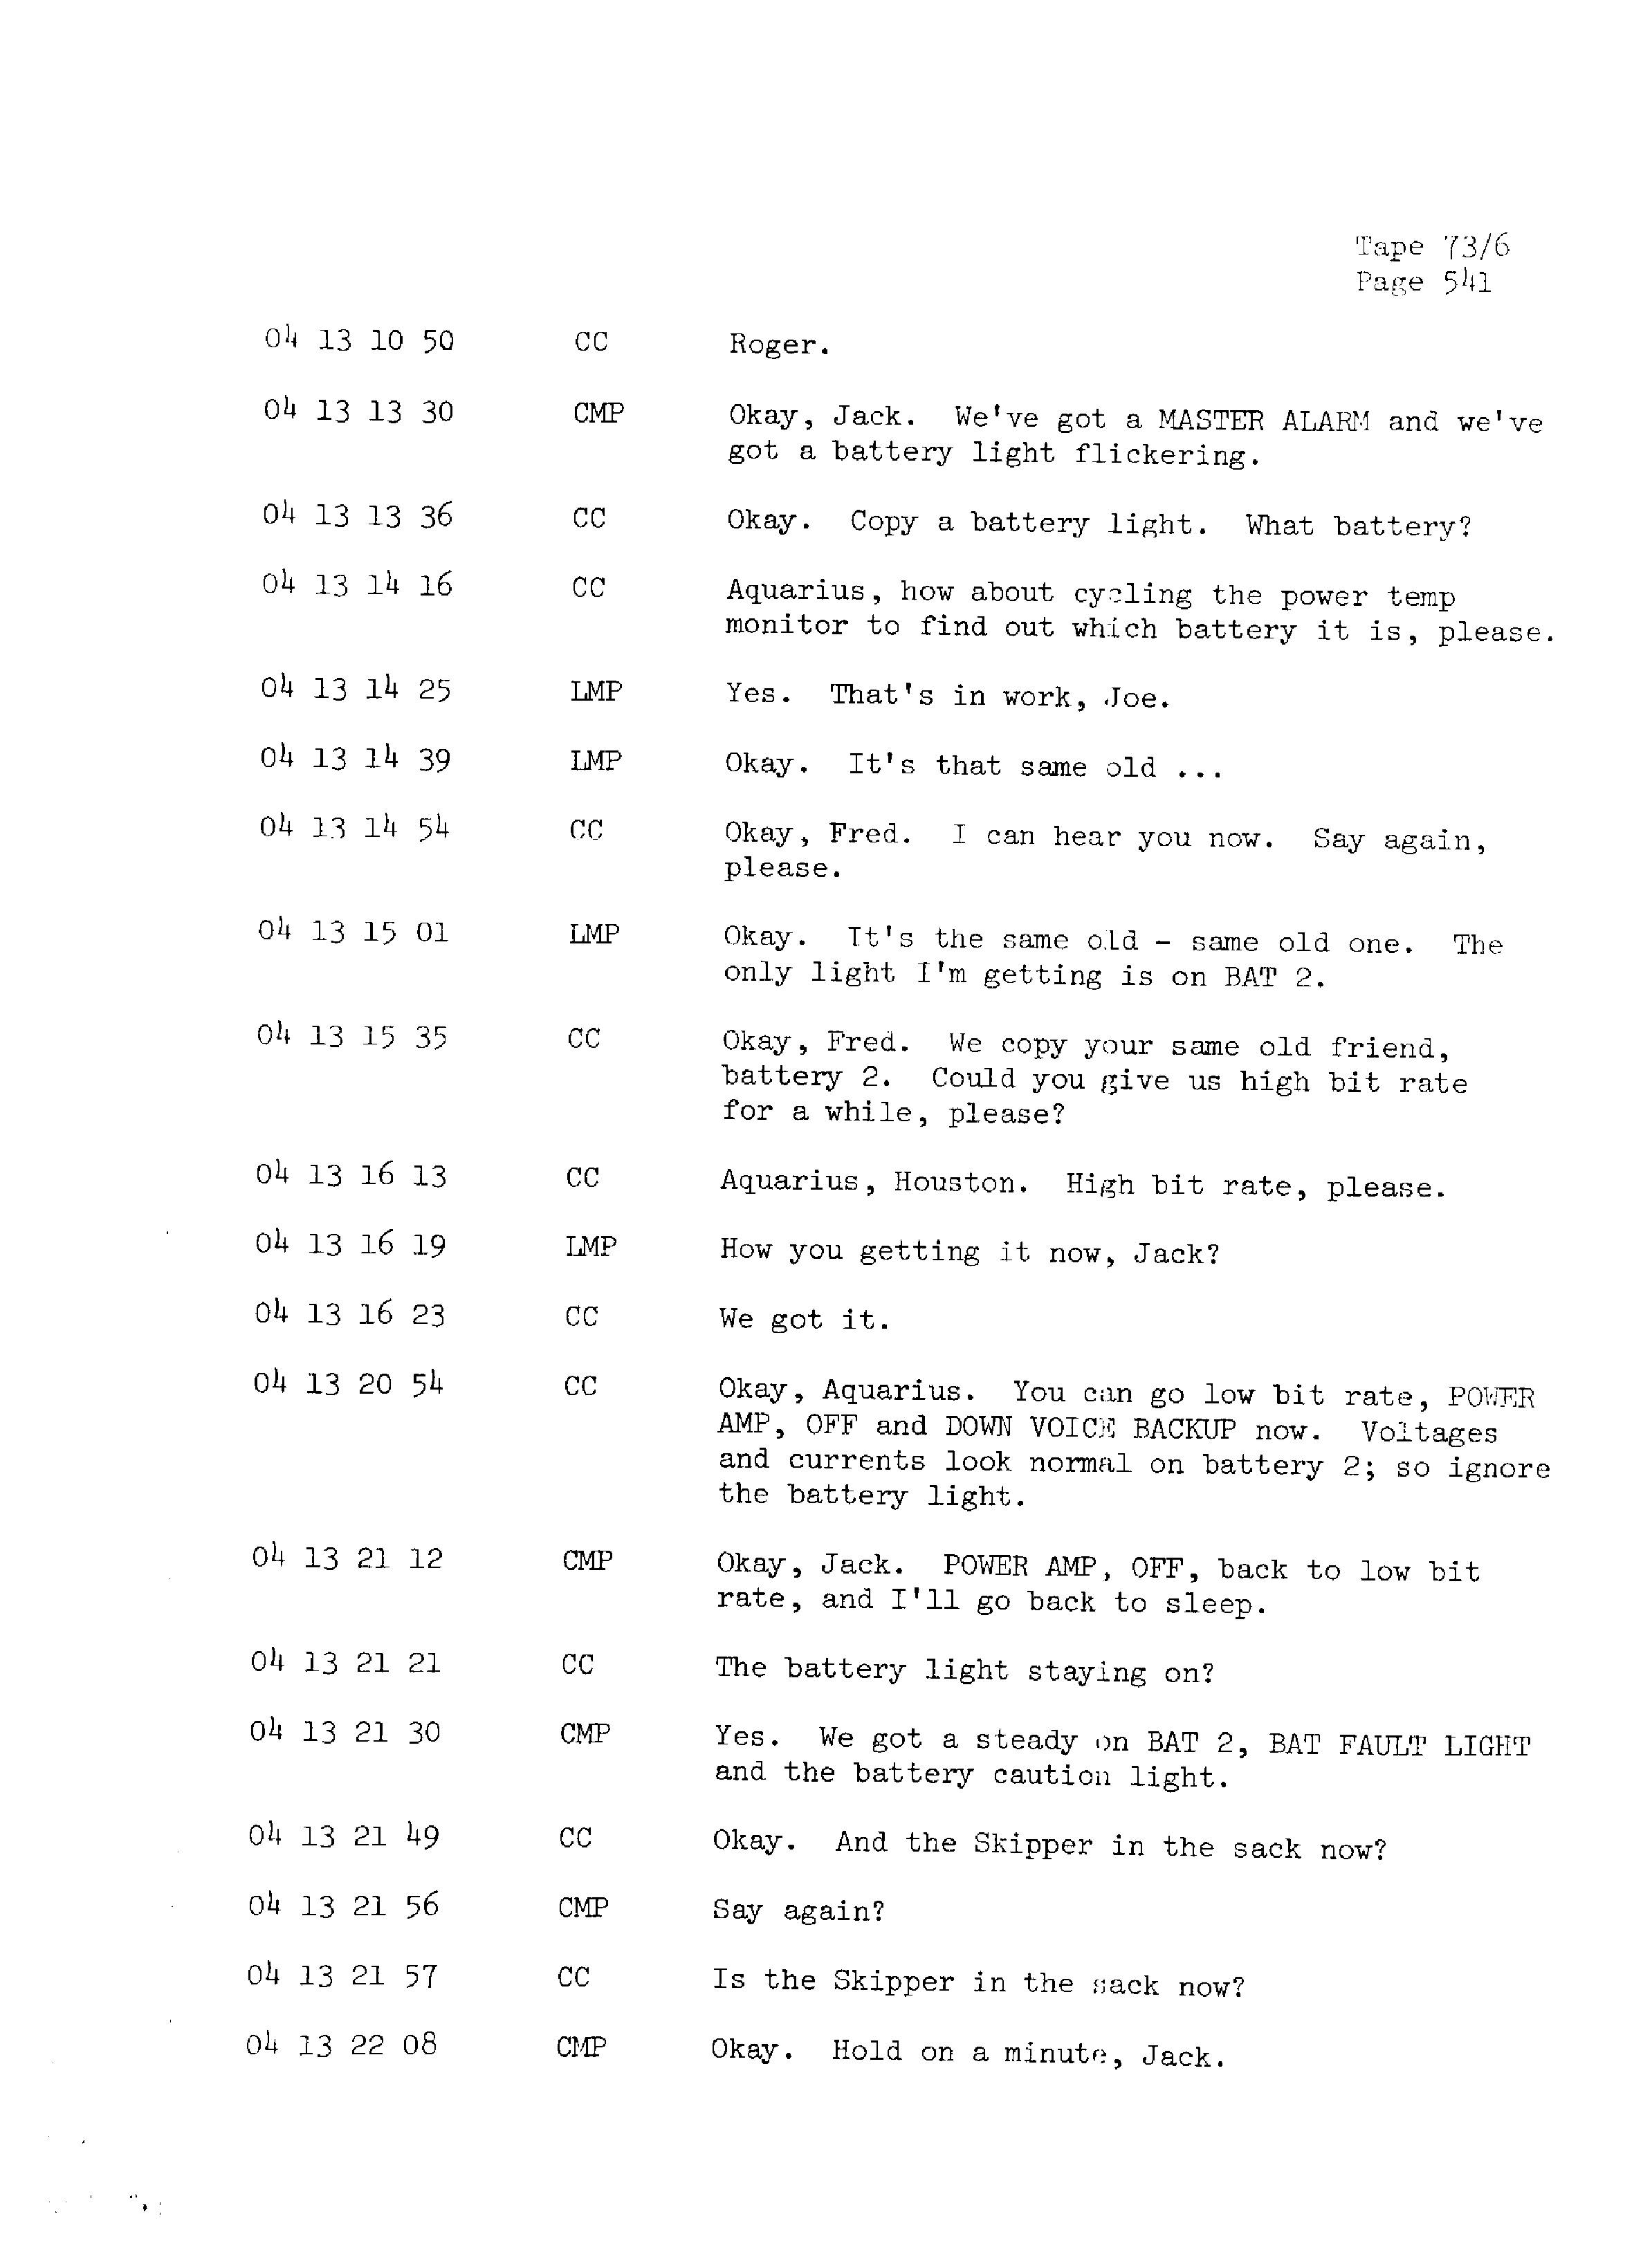 Page 548 of Apollo 13’s original transcript